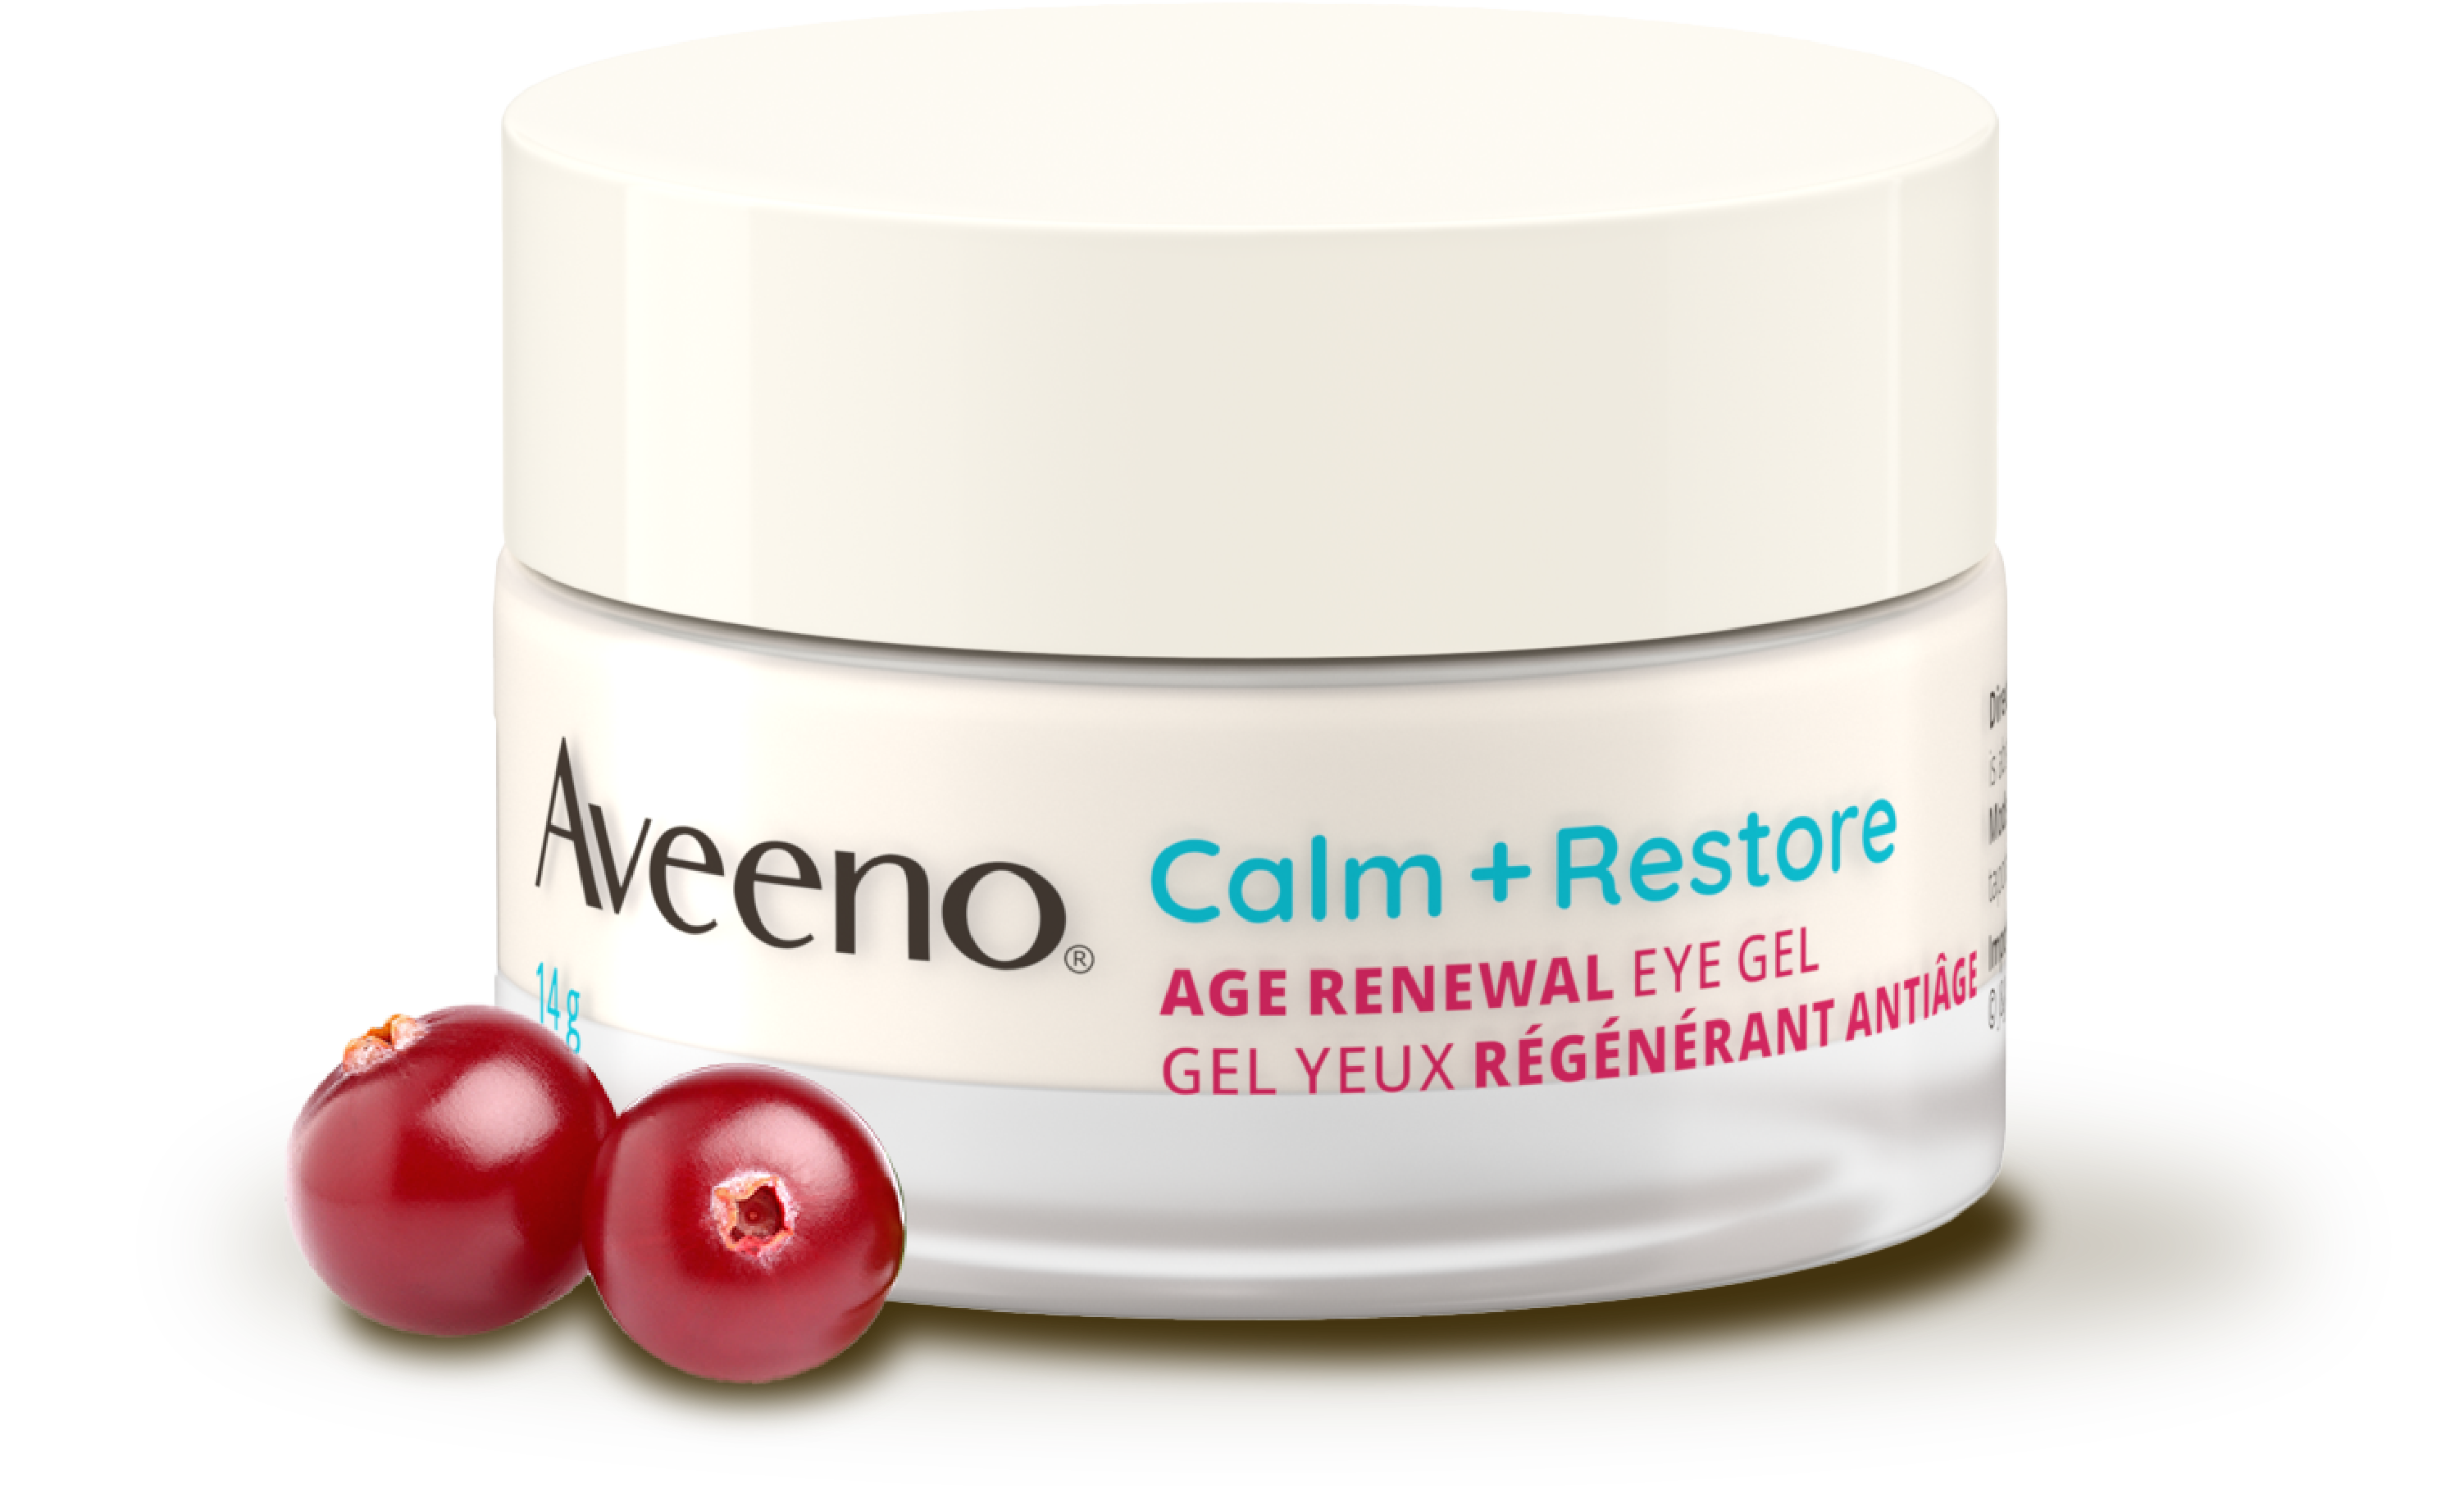 Aveeno Age Renewal 眼霜: 用這款永恒嘅美容解決方案讓您的眼煥發活力。 明顯減少細紋和皺紋，同時舒緩和滋養嬌嫩的眼部區域。